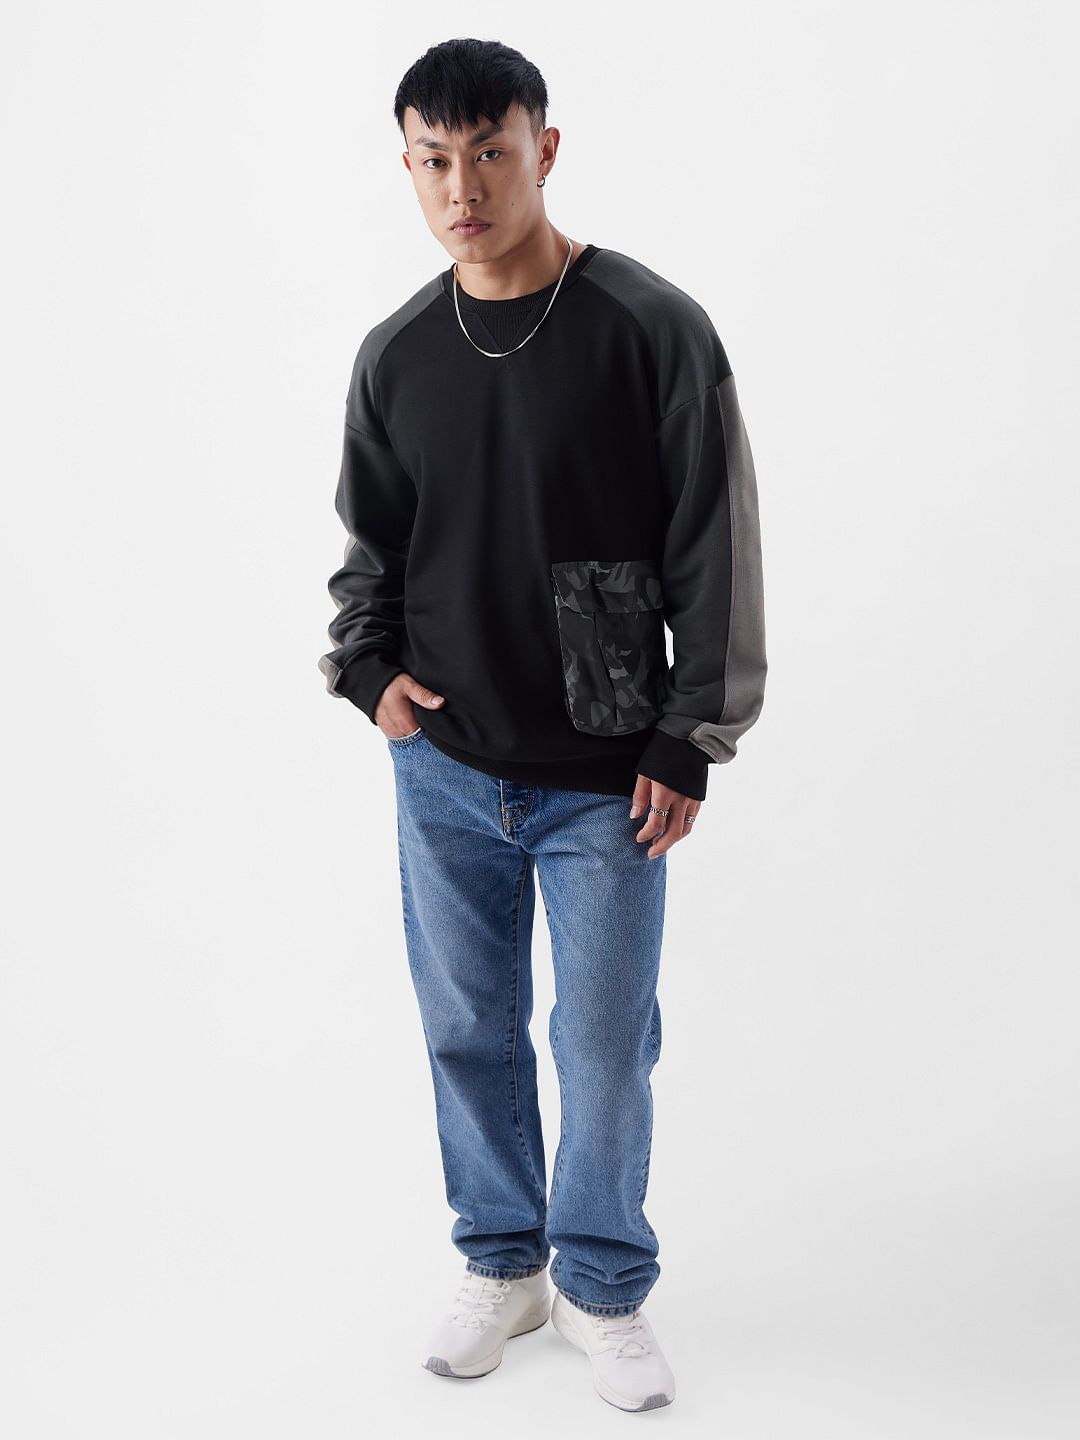 Buy Official TSS Originals: Black Camo Men Oversized Sweatshirt Online